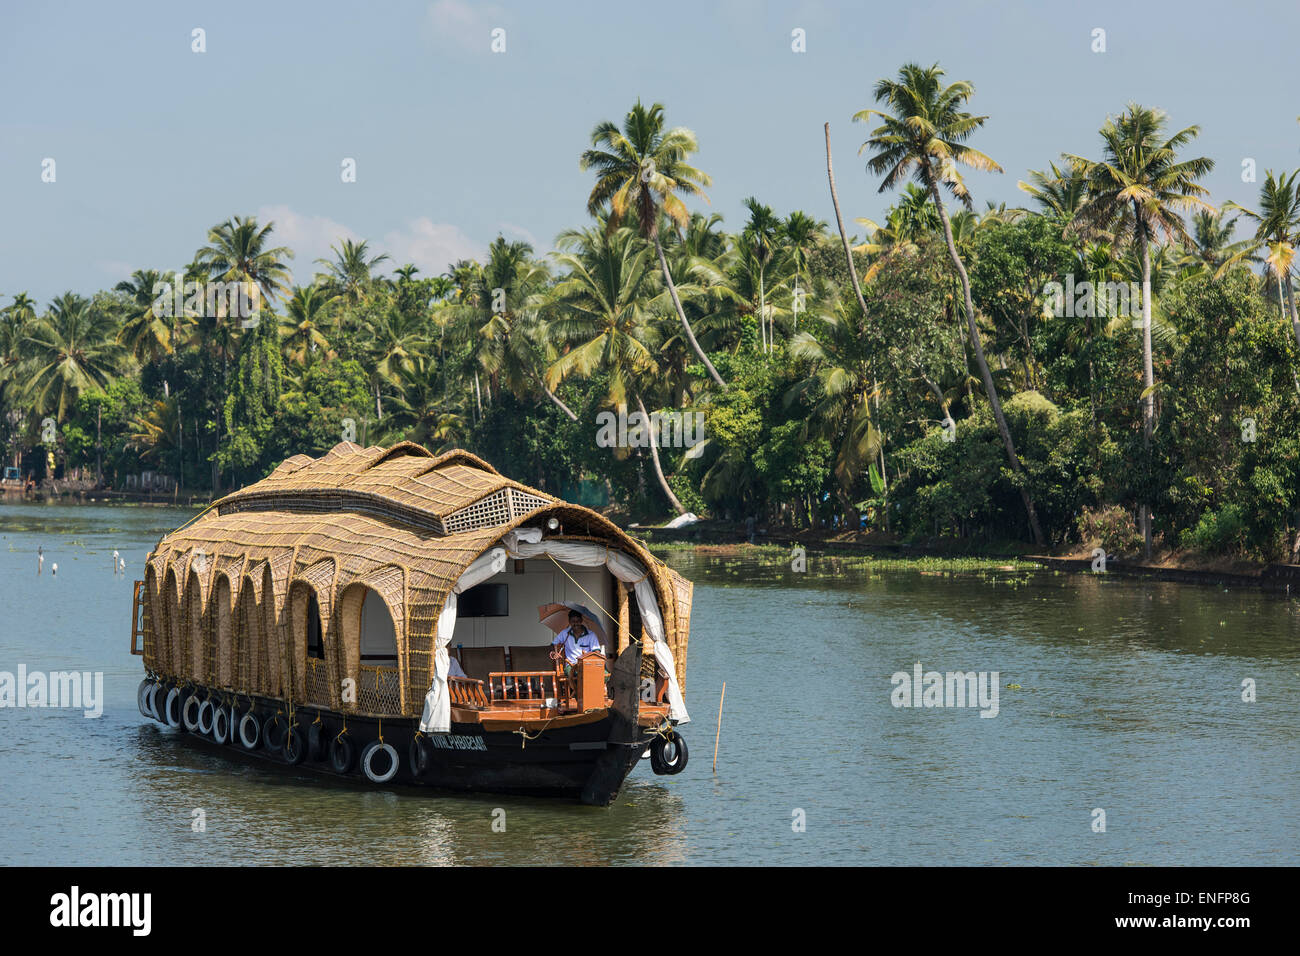 Péniche, backwaters système de canaux, du Lac Vembanad, Kerala, Inde Banque D'Images